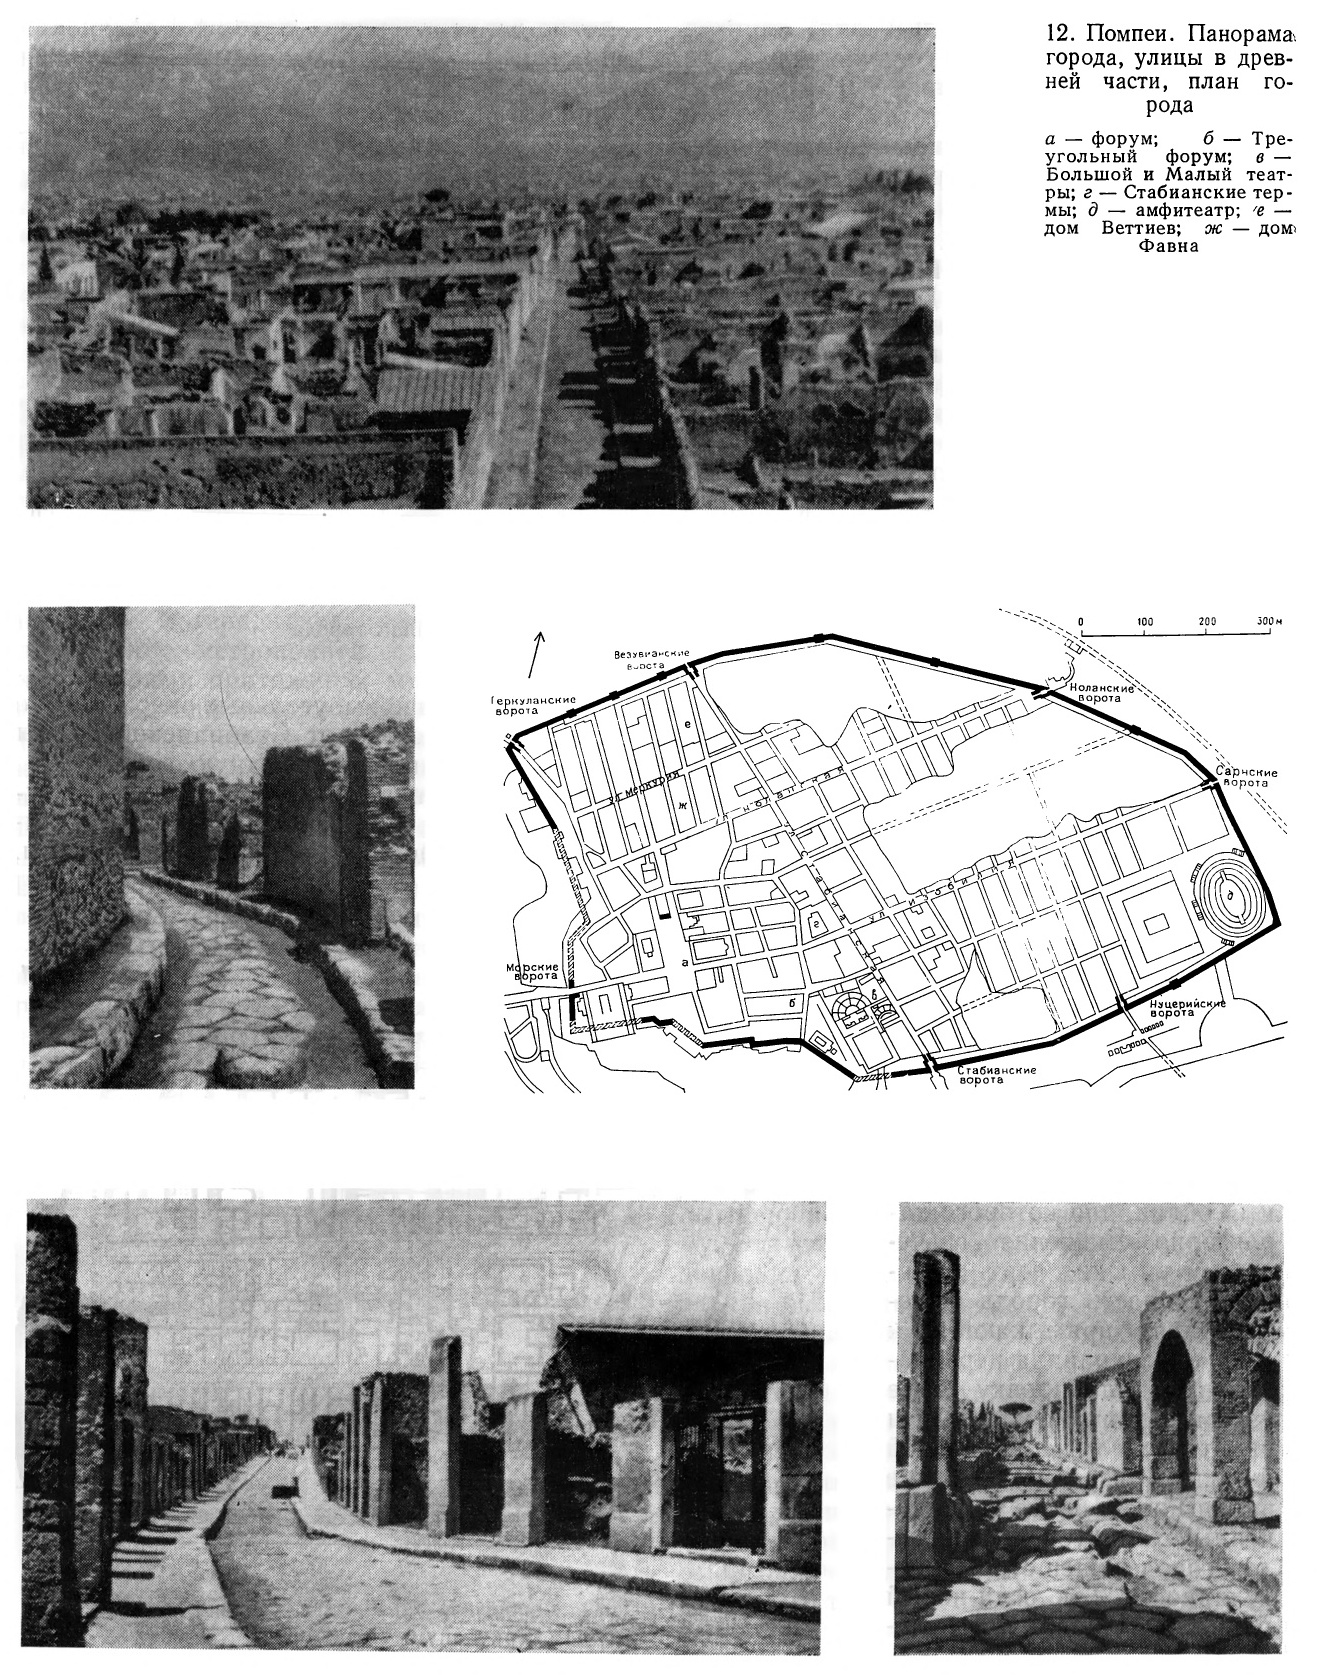 Помпеи. Панорама города, улицы в древней части, план города